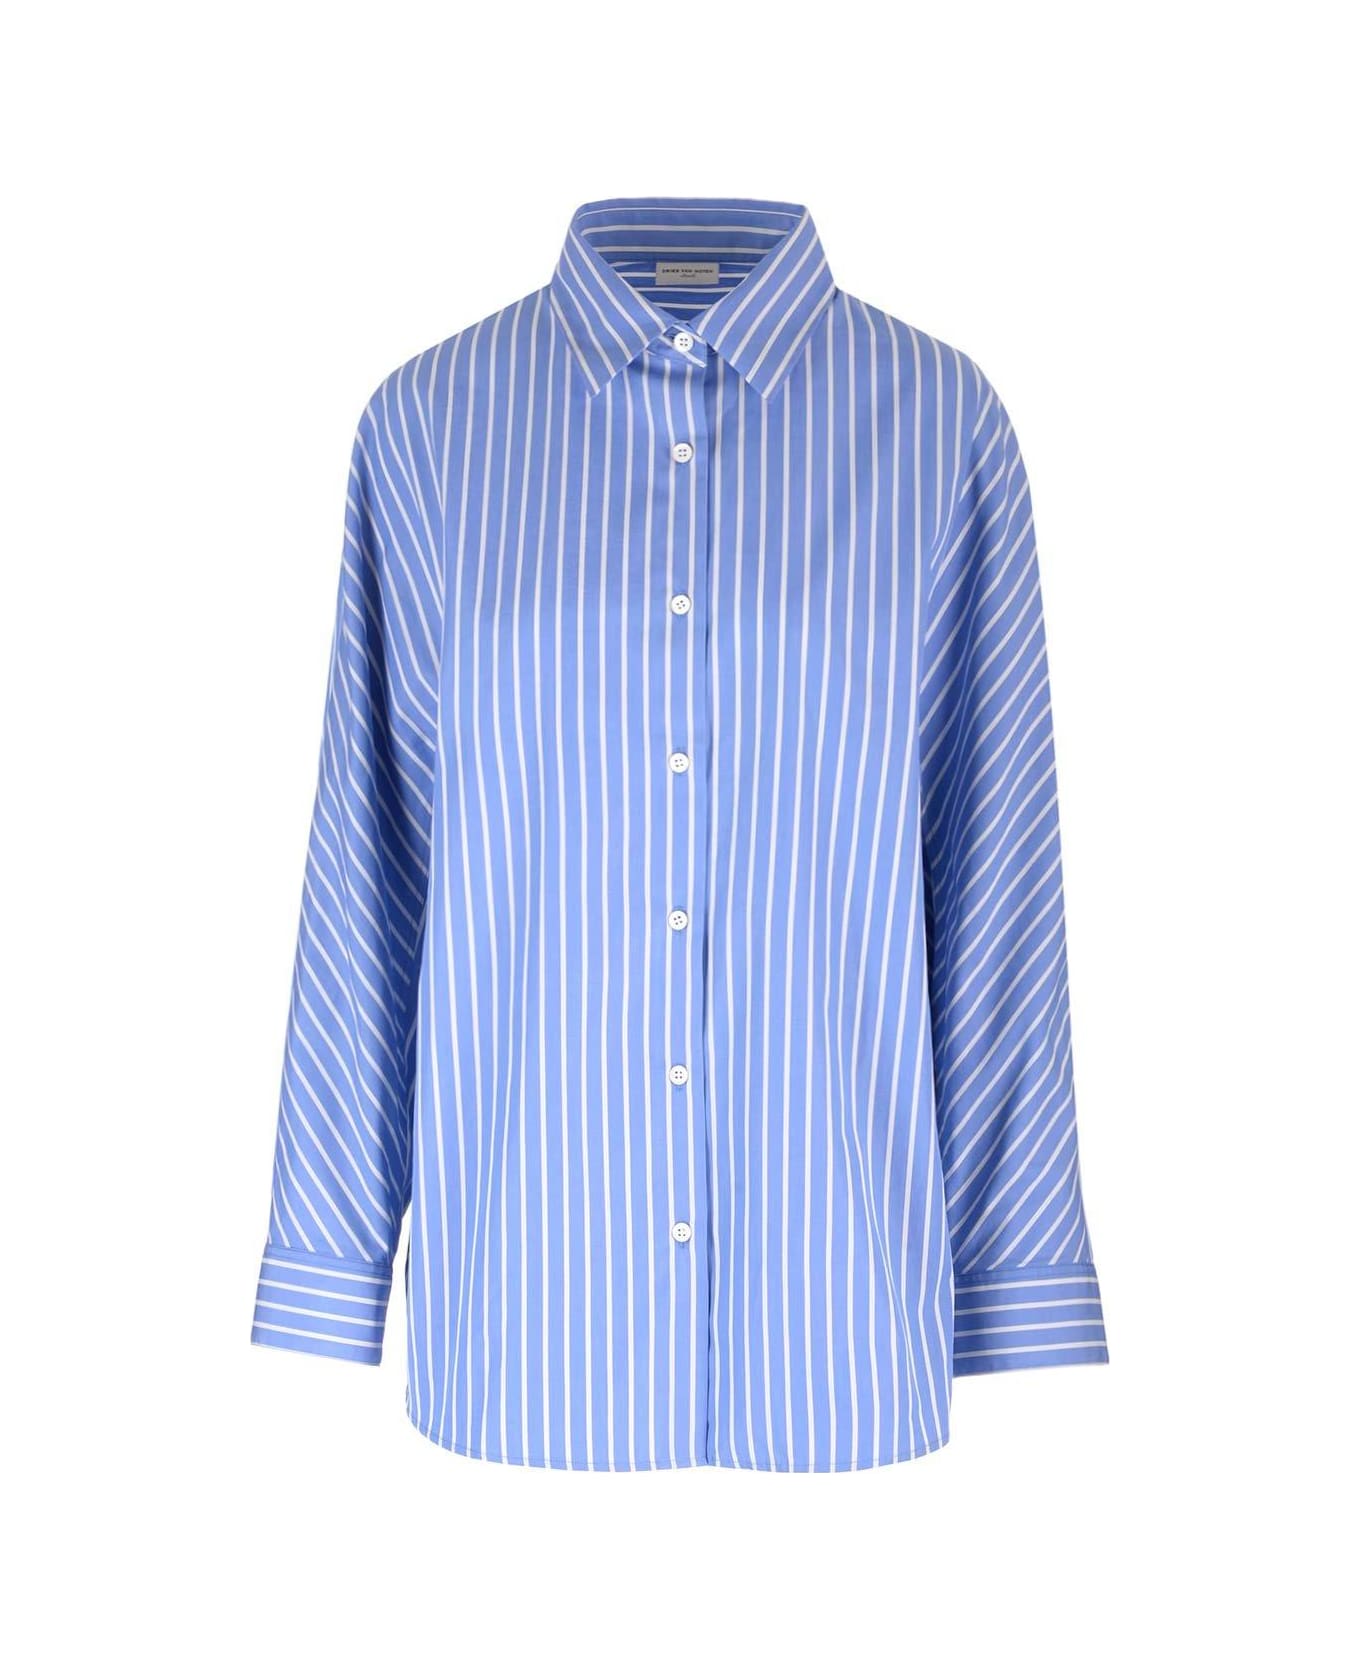 Dries Van Noten Striped Button-up Shirt - Light Blue シャツ